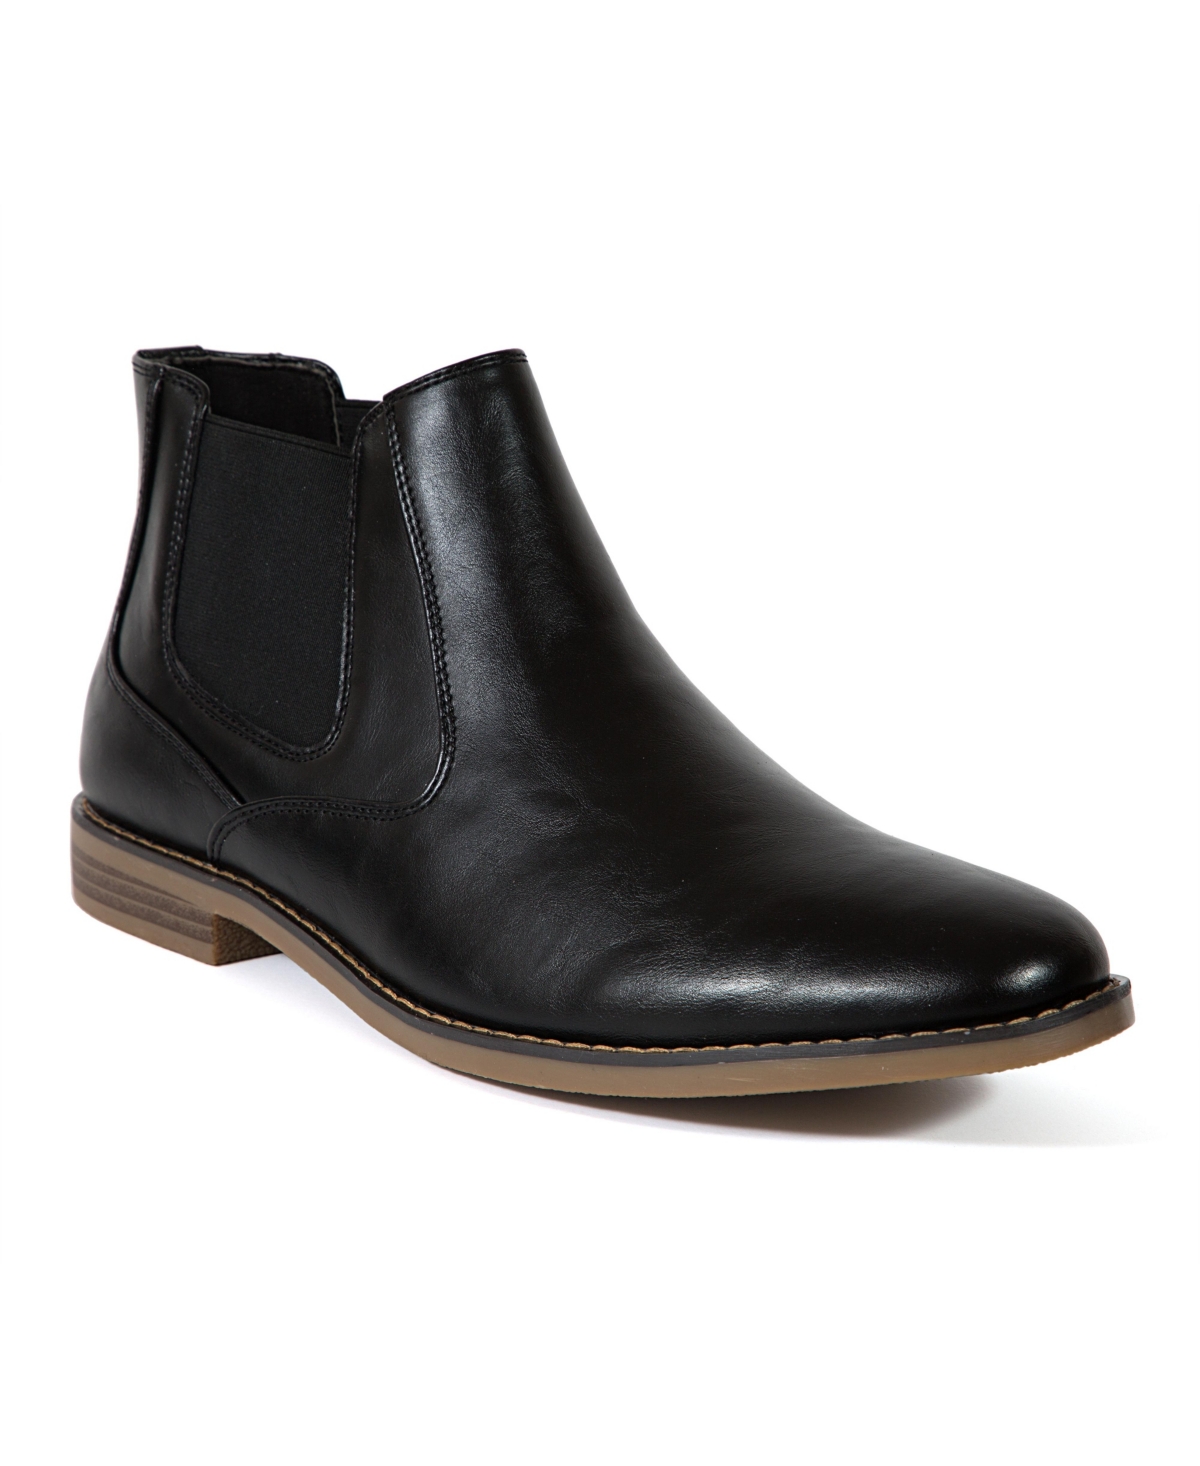 Men's Hal Dress Comfort Chelsea Boots - Black